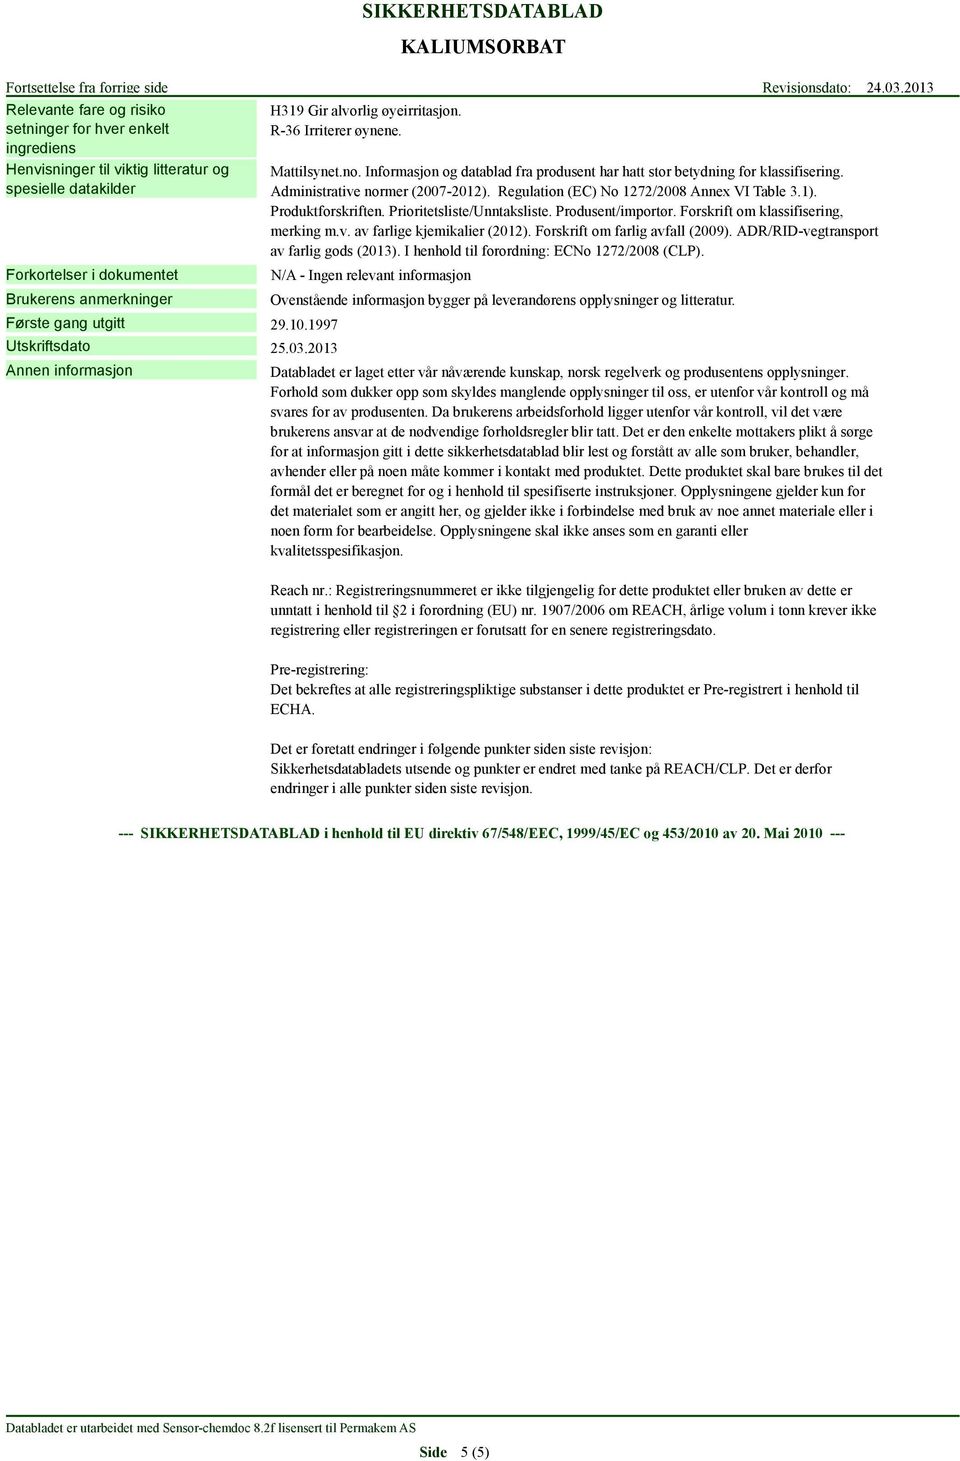 Administrative normer (2007-2012). Regulation (EC) No 1272/2008 Annex VI Table 3.1). Produktforskriften. Prioritetsliste/Unntaksliste. Produsent/importør. Forskrift om klassifisering, merking m.v. av farlige kjemikalier (2012).